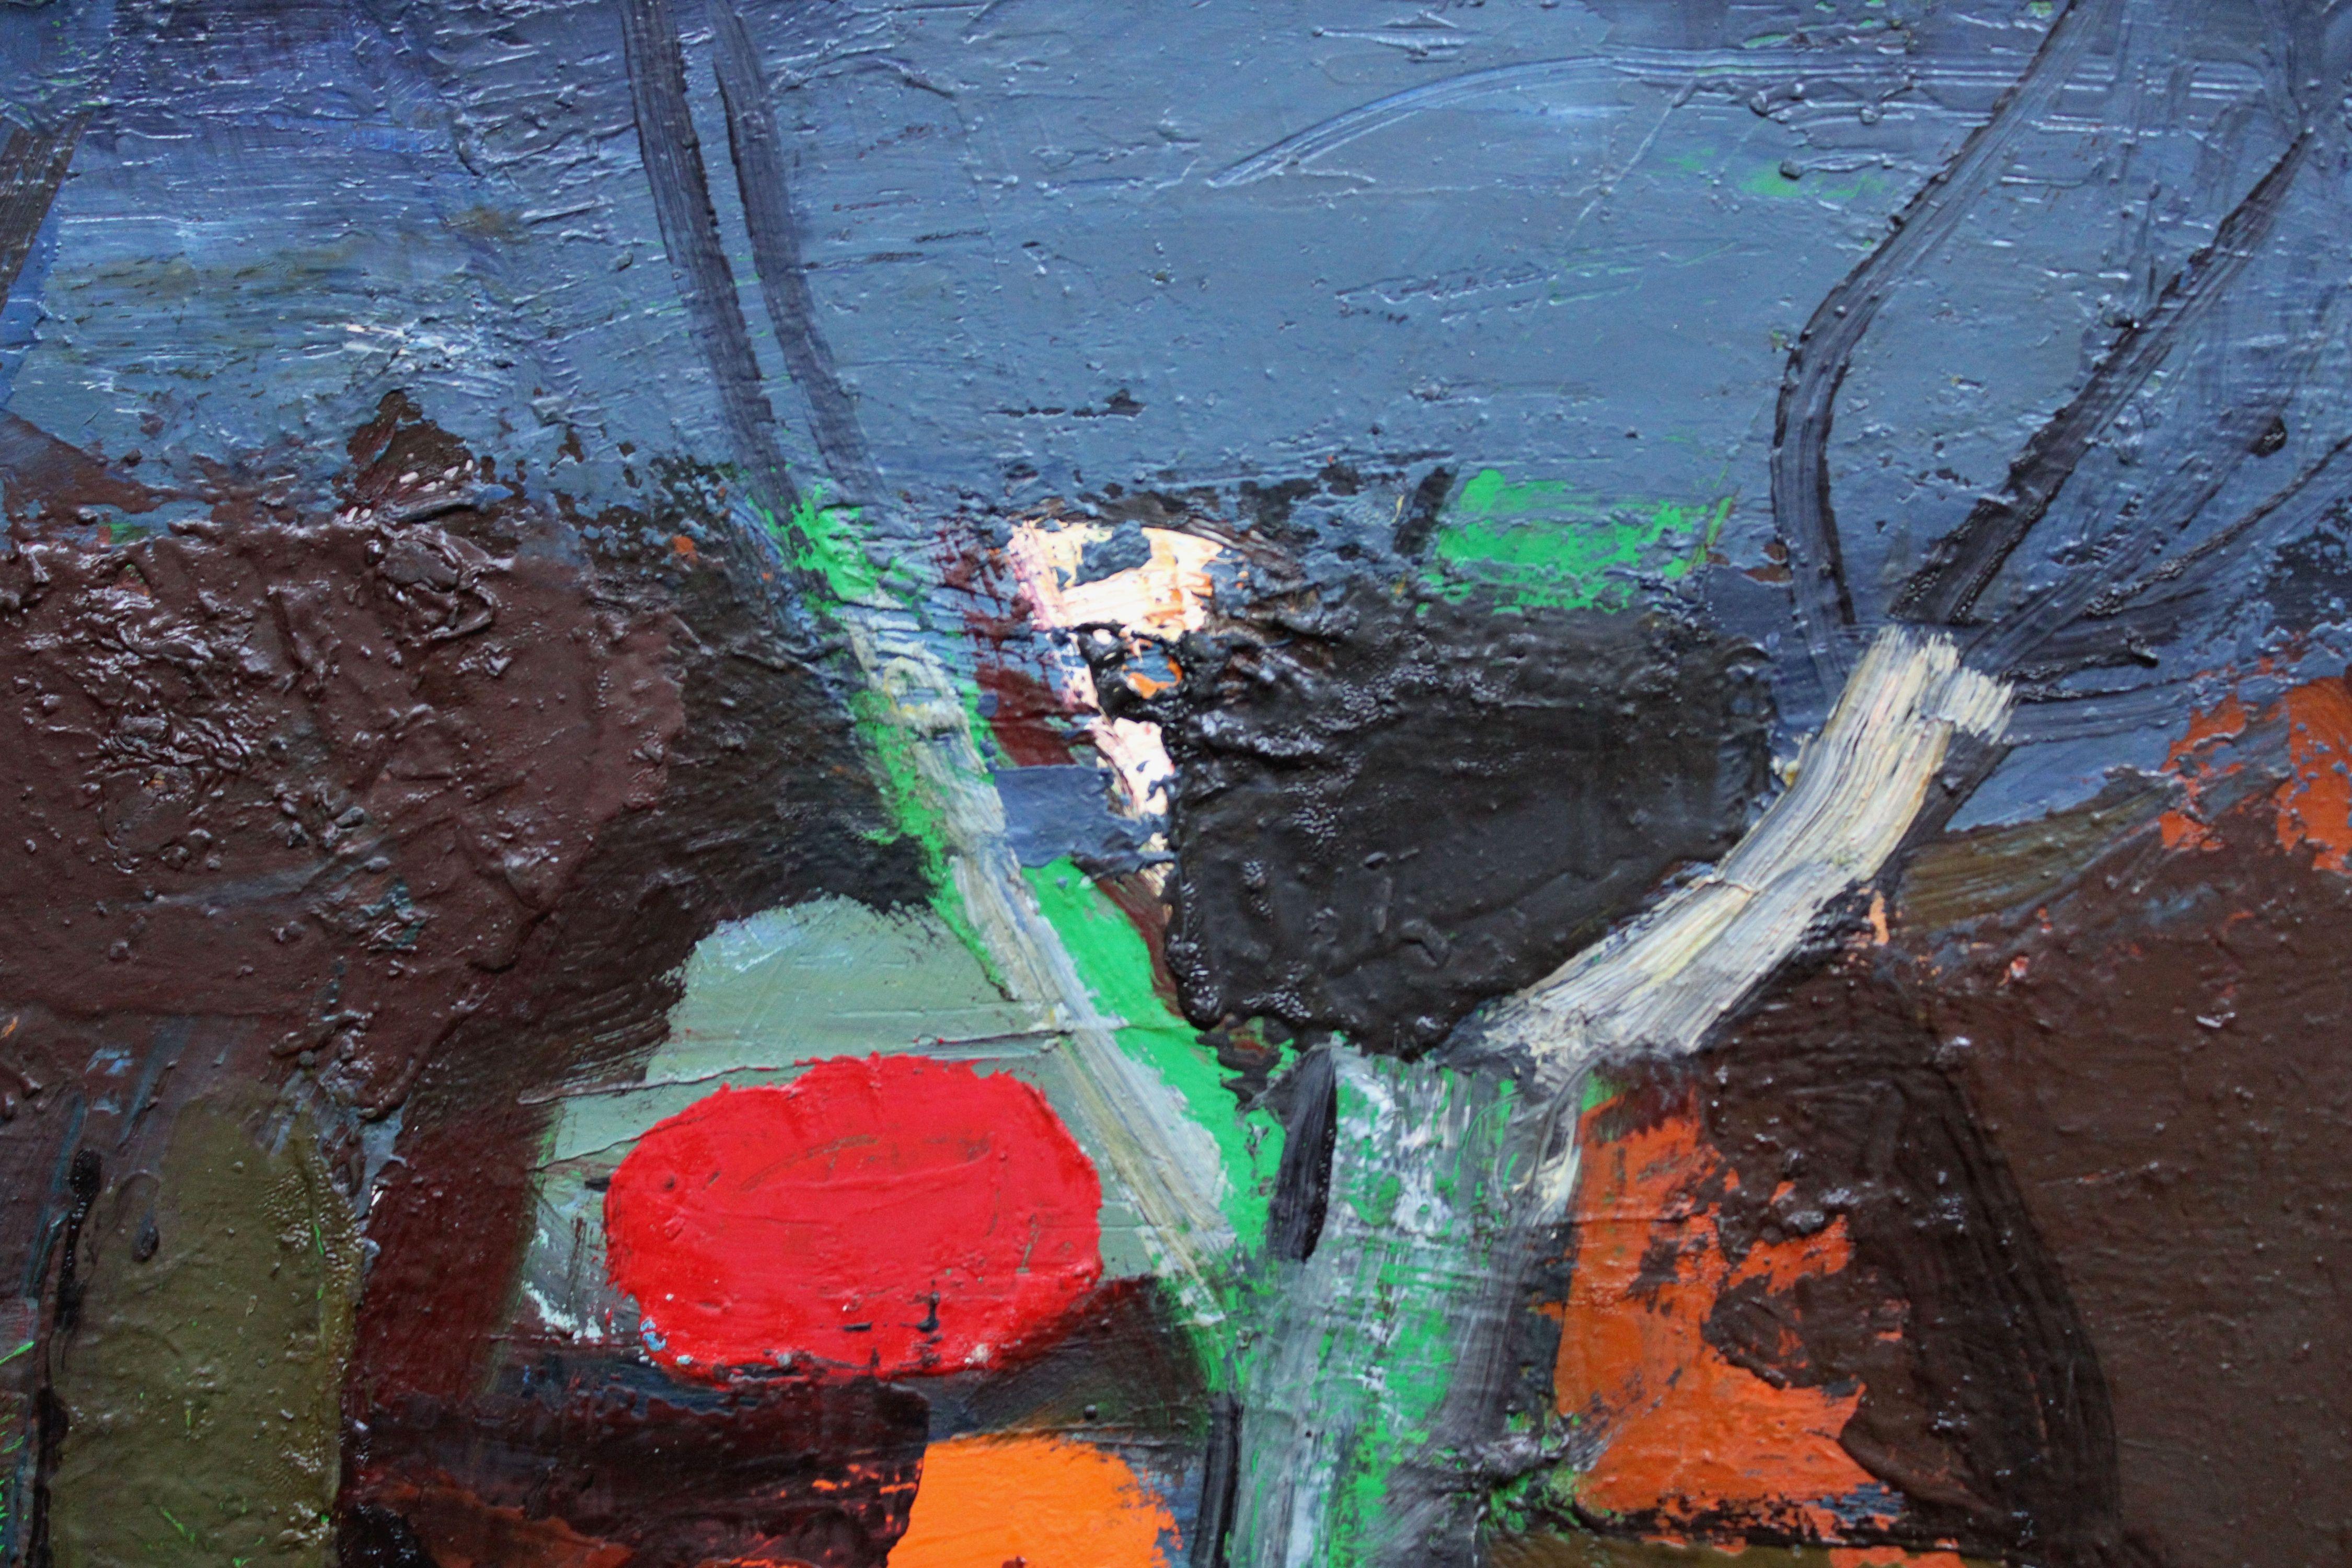 Landschaft am Fluss. Öl auf Karton, 47. 5 x 69. 5 cm

Aleksandr Rodin (1922-2001)
Maler, geboren in einer Bauernfamilie. Ehefrau Rasma Lace - Kunstwissenschaftlerin. Studium an der Stalingrader Kunstschule, Kunstschule Saratow, Abschluss an der